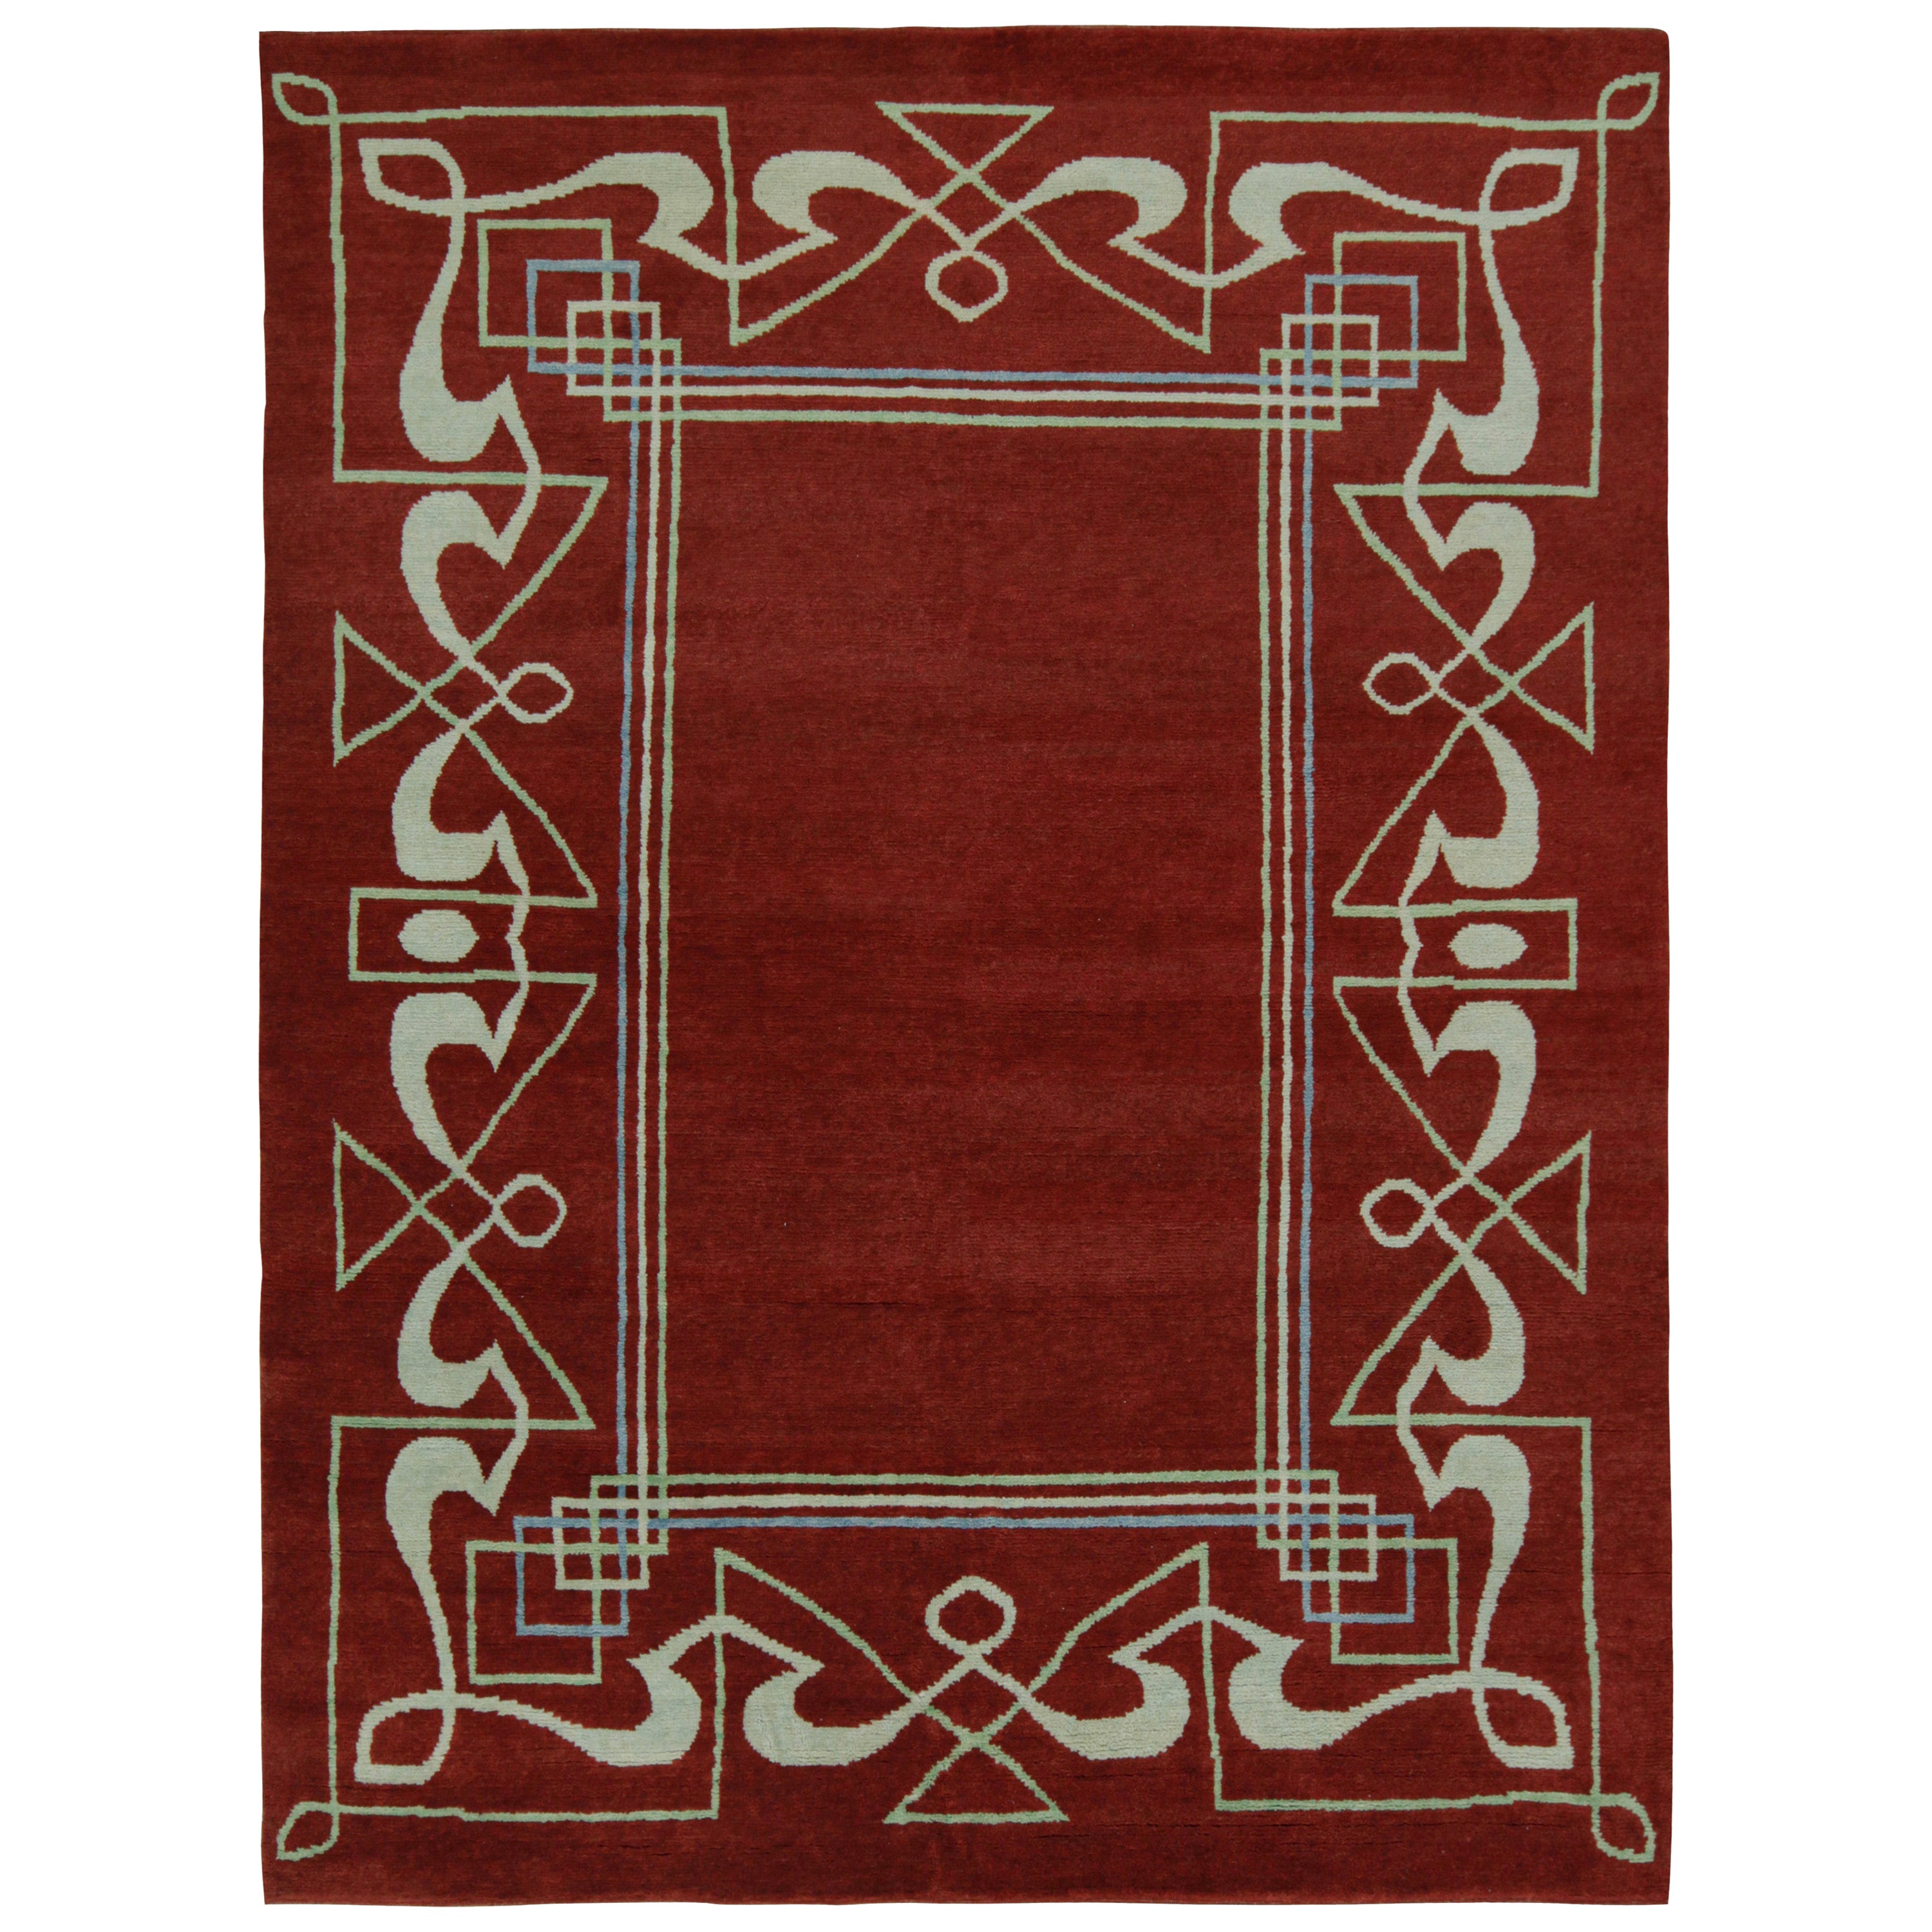 Rug & Kilim's French Style Art Deco rug in Red & White Geometric Patterns (tapis Art déco de style français avec des motifs géométriques rouges et blancs)